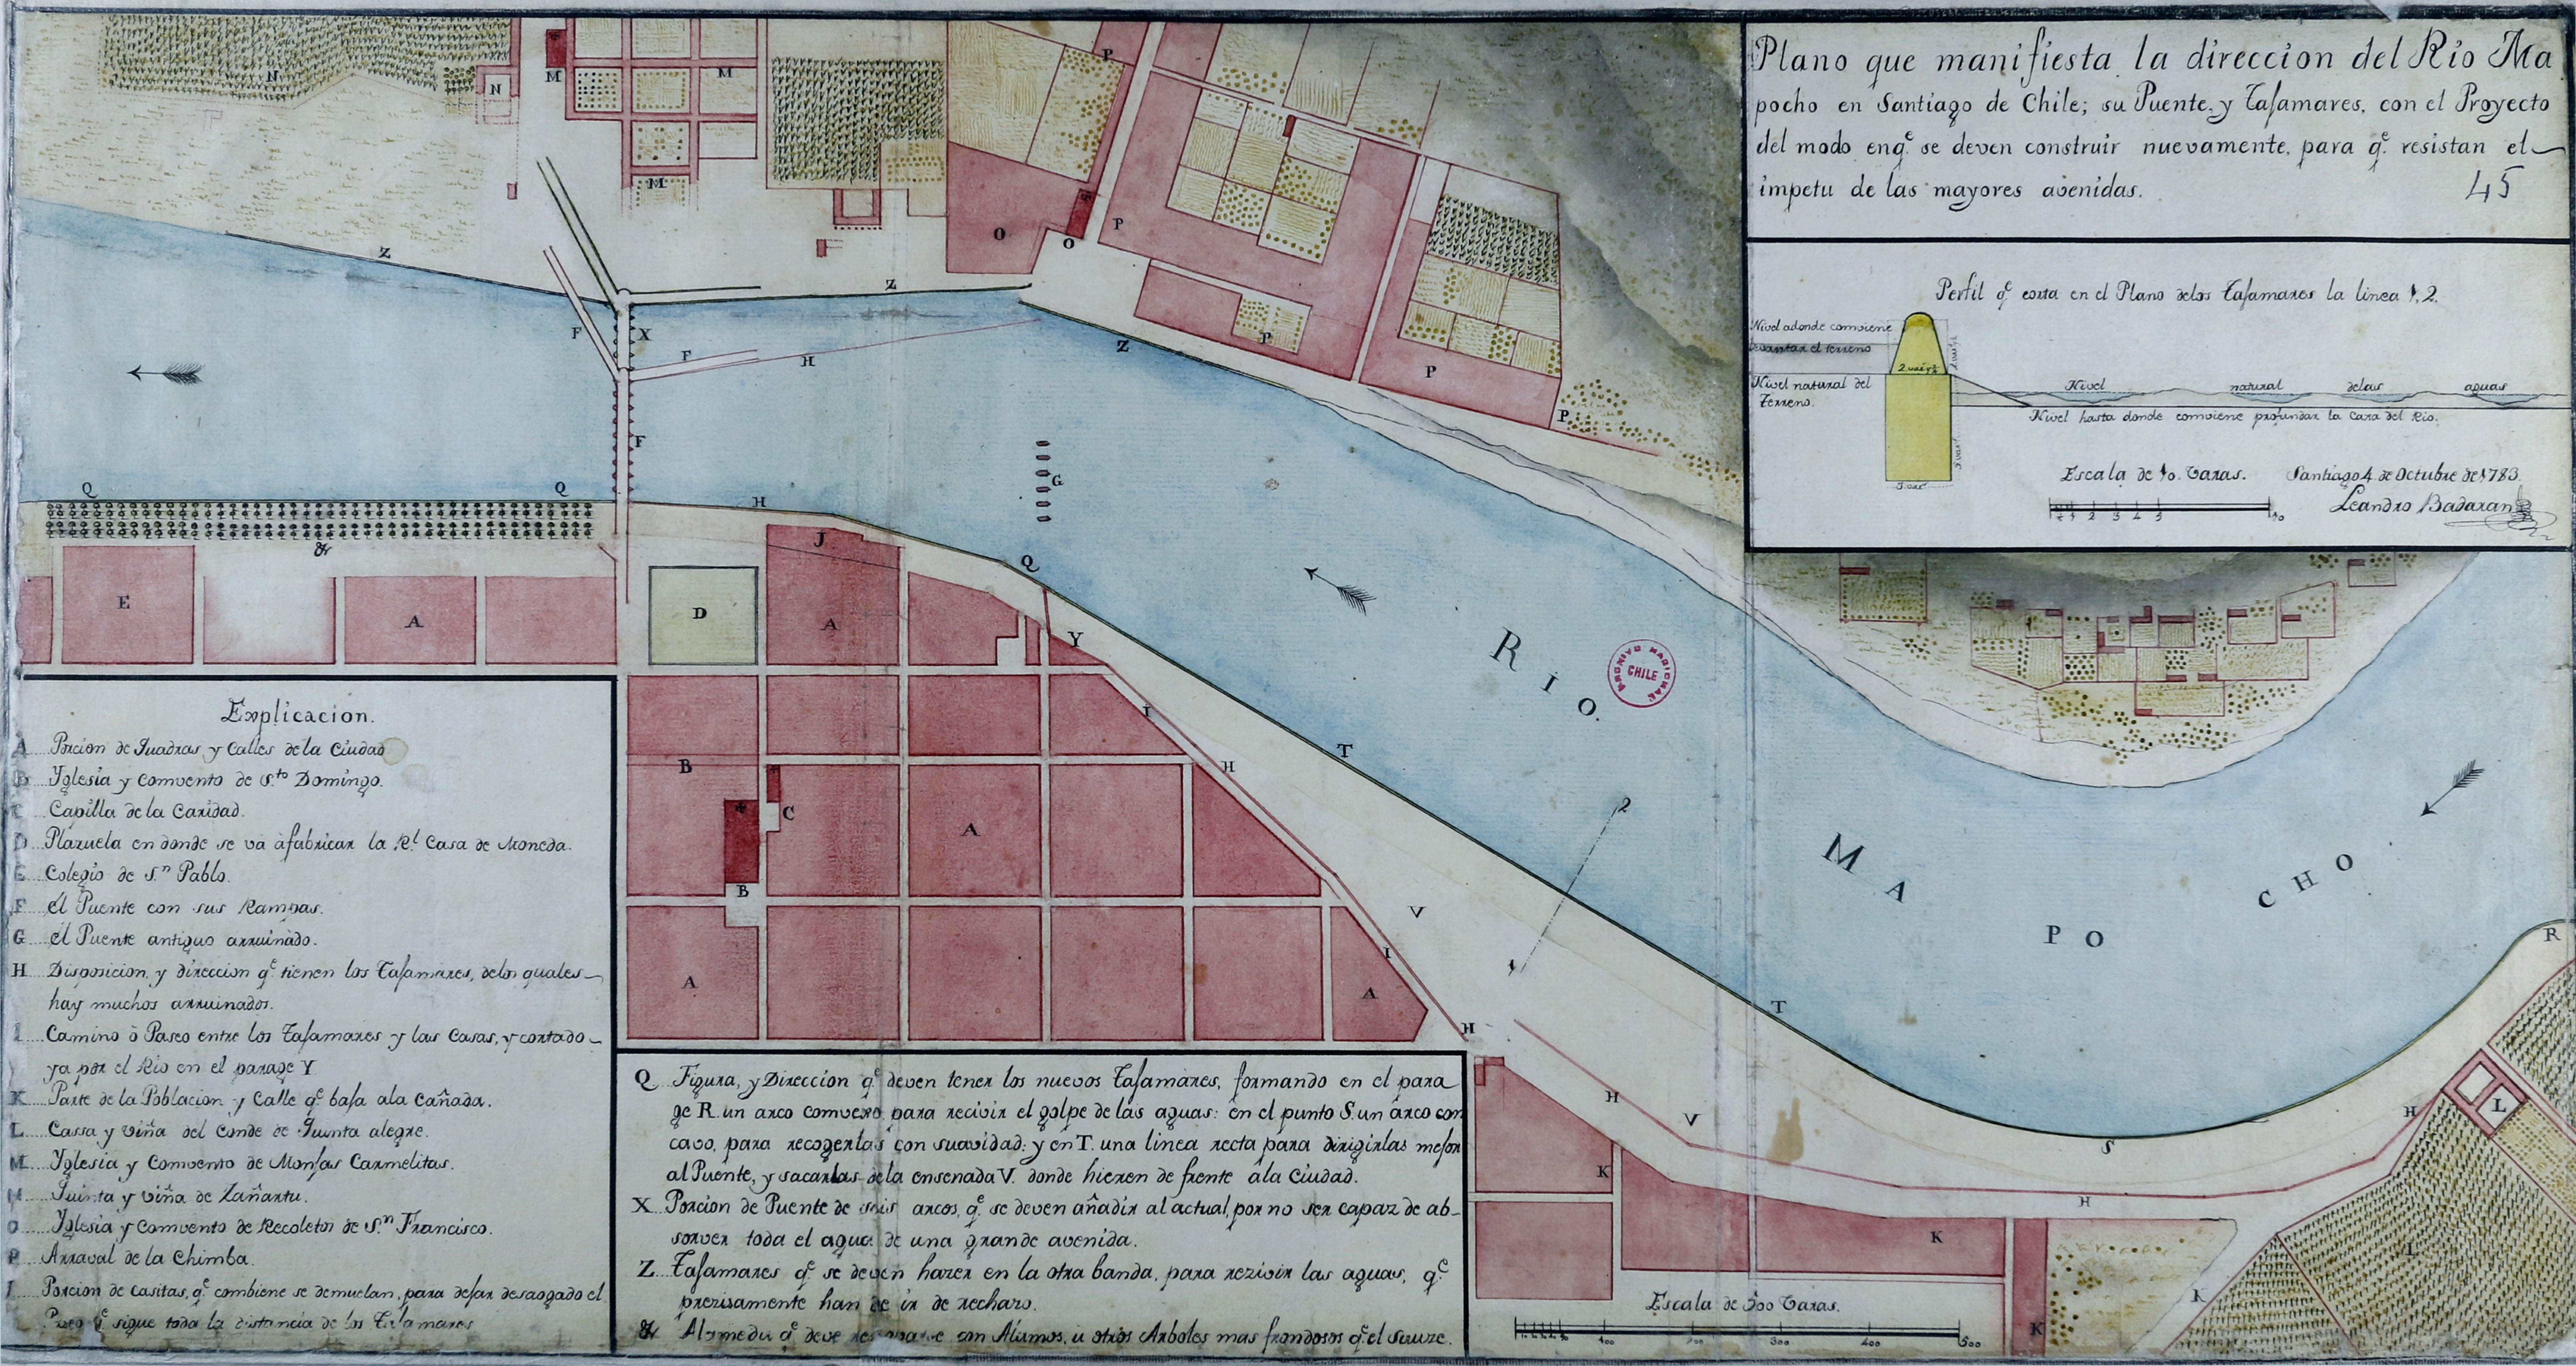 Plano que manifiesta la dirección del Río Mapocho en Santiago de Chile, 1783